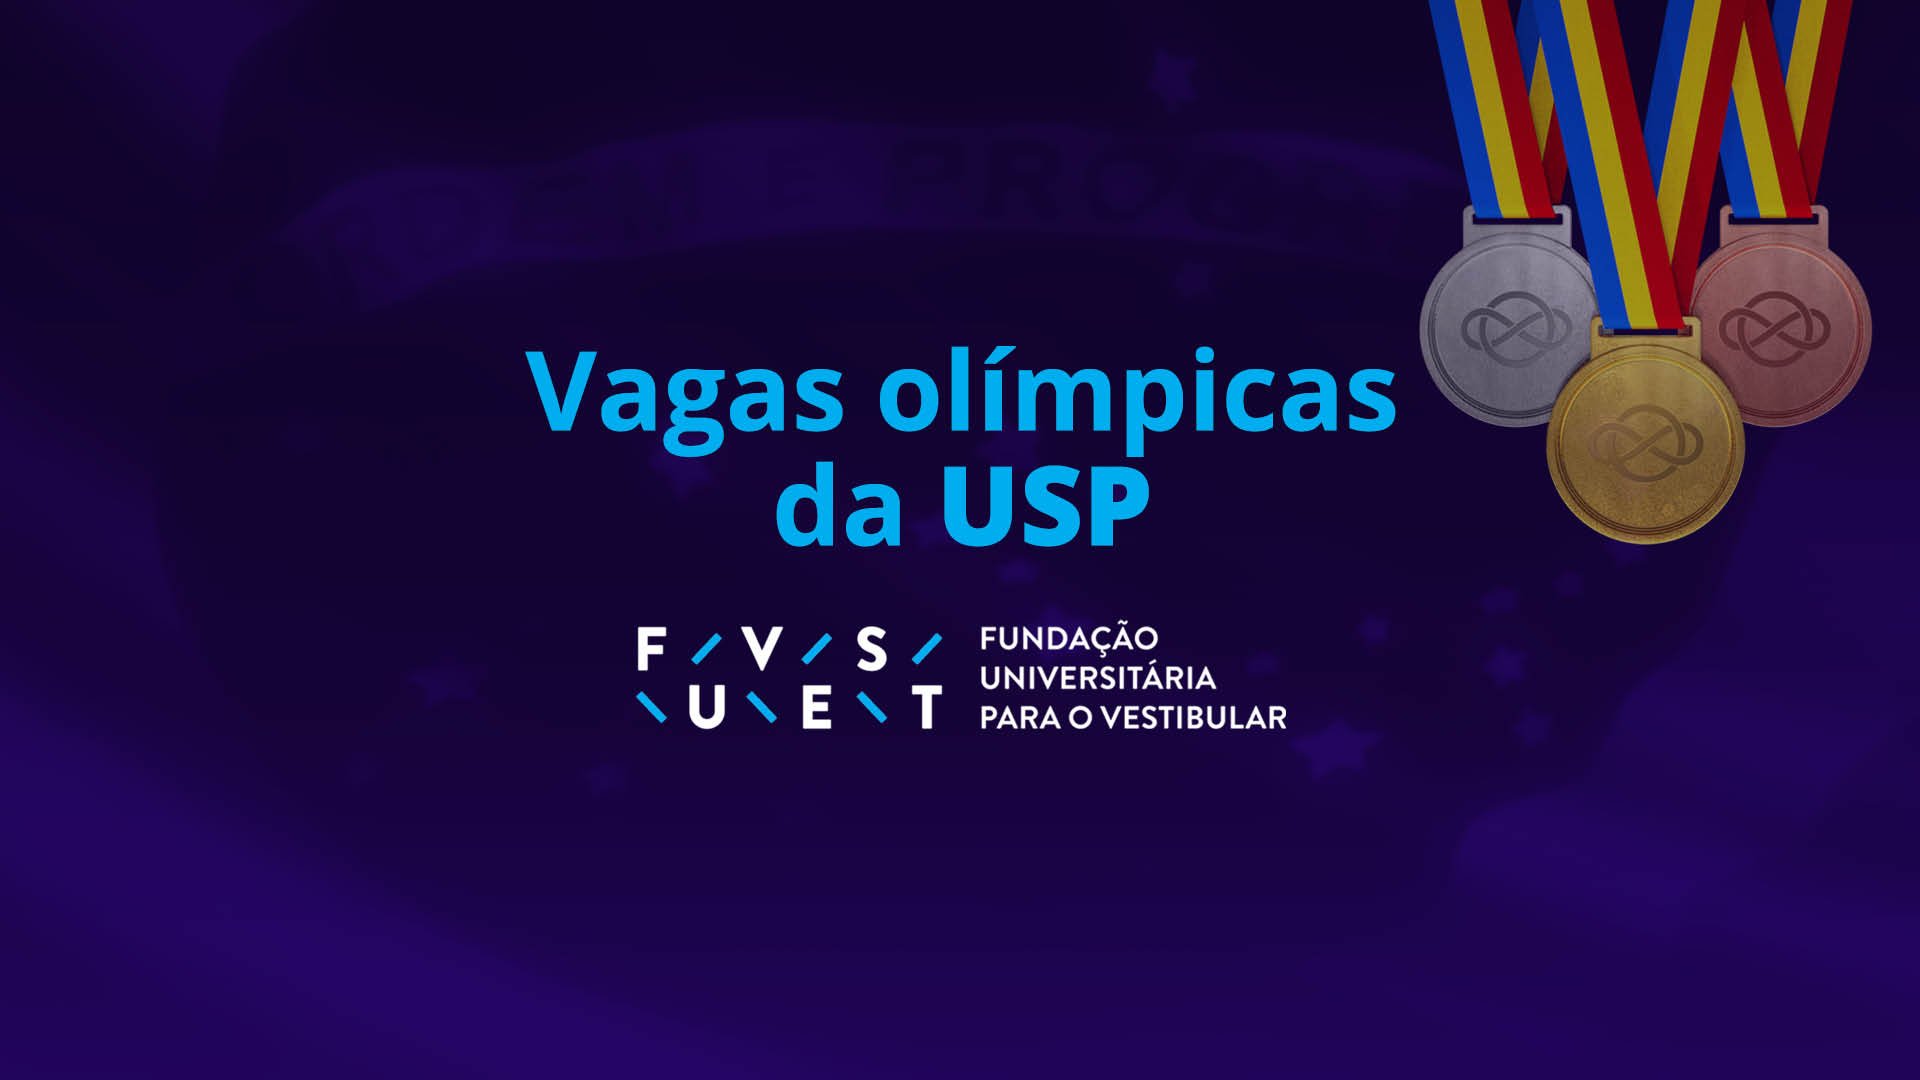 Vagas-olímpicas-USP_Imagens_1920x1080px_final